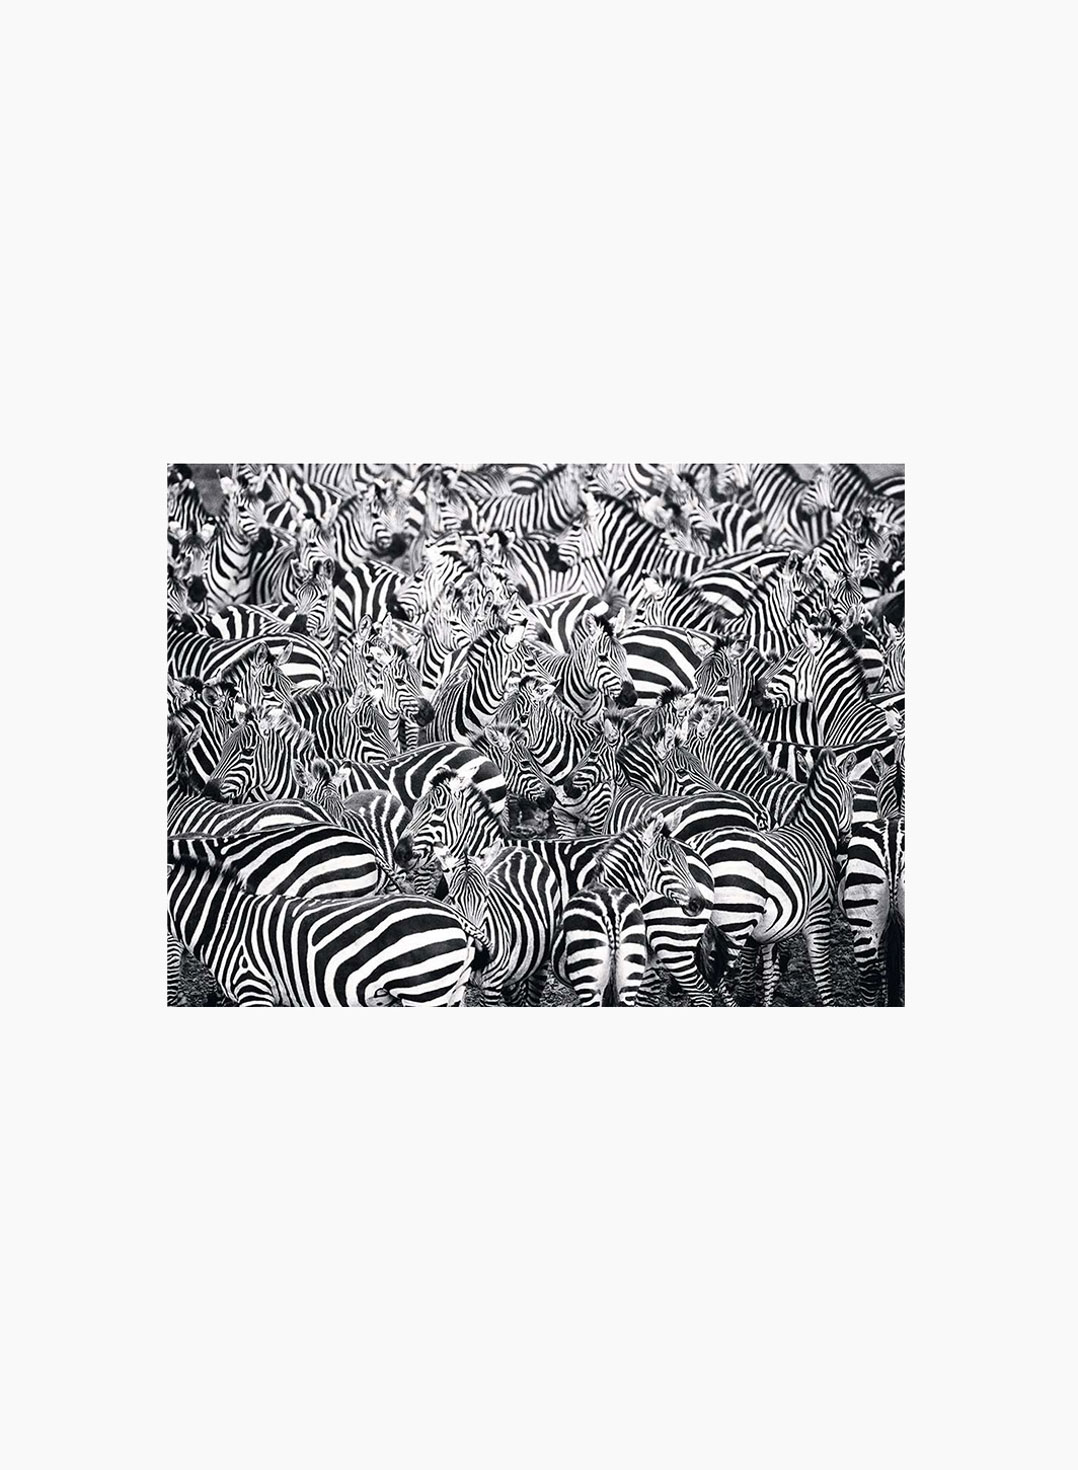 Ravensburger Puzzle Zebras 500p